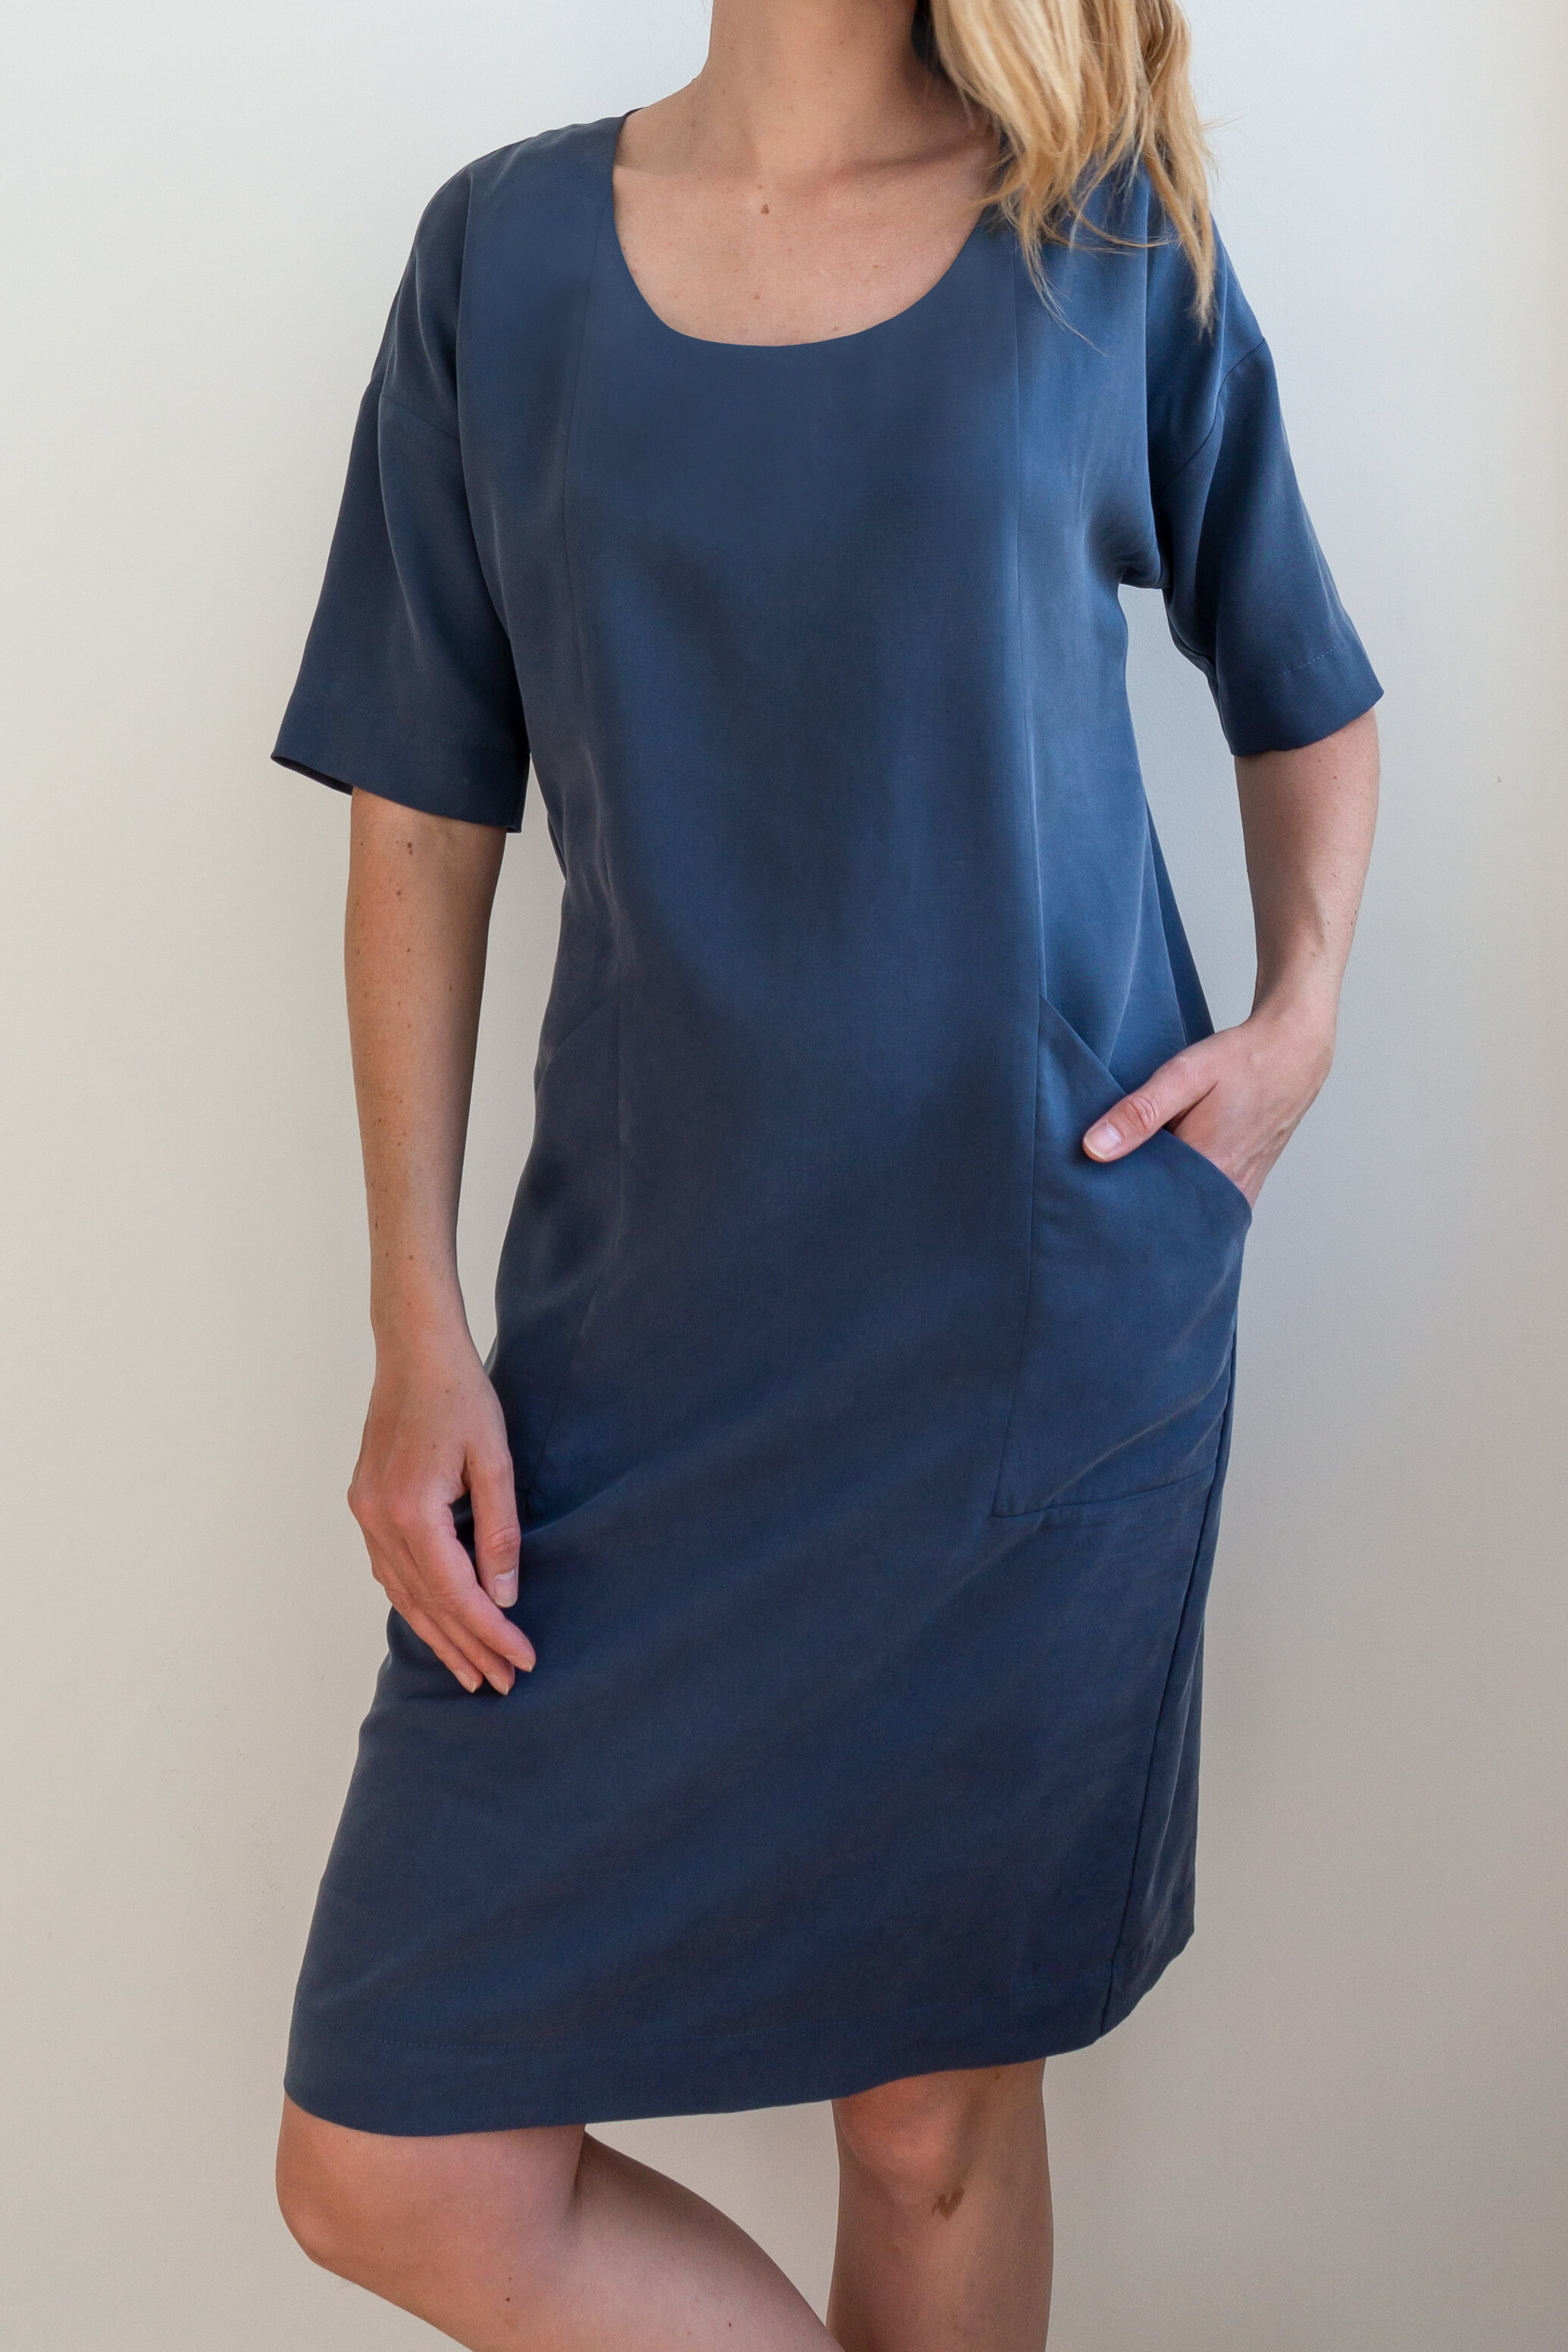 Blue tencel dress — FENNY FABER / Slowfashion